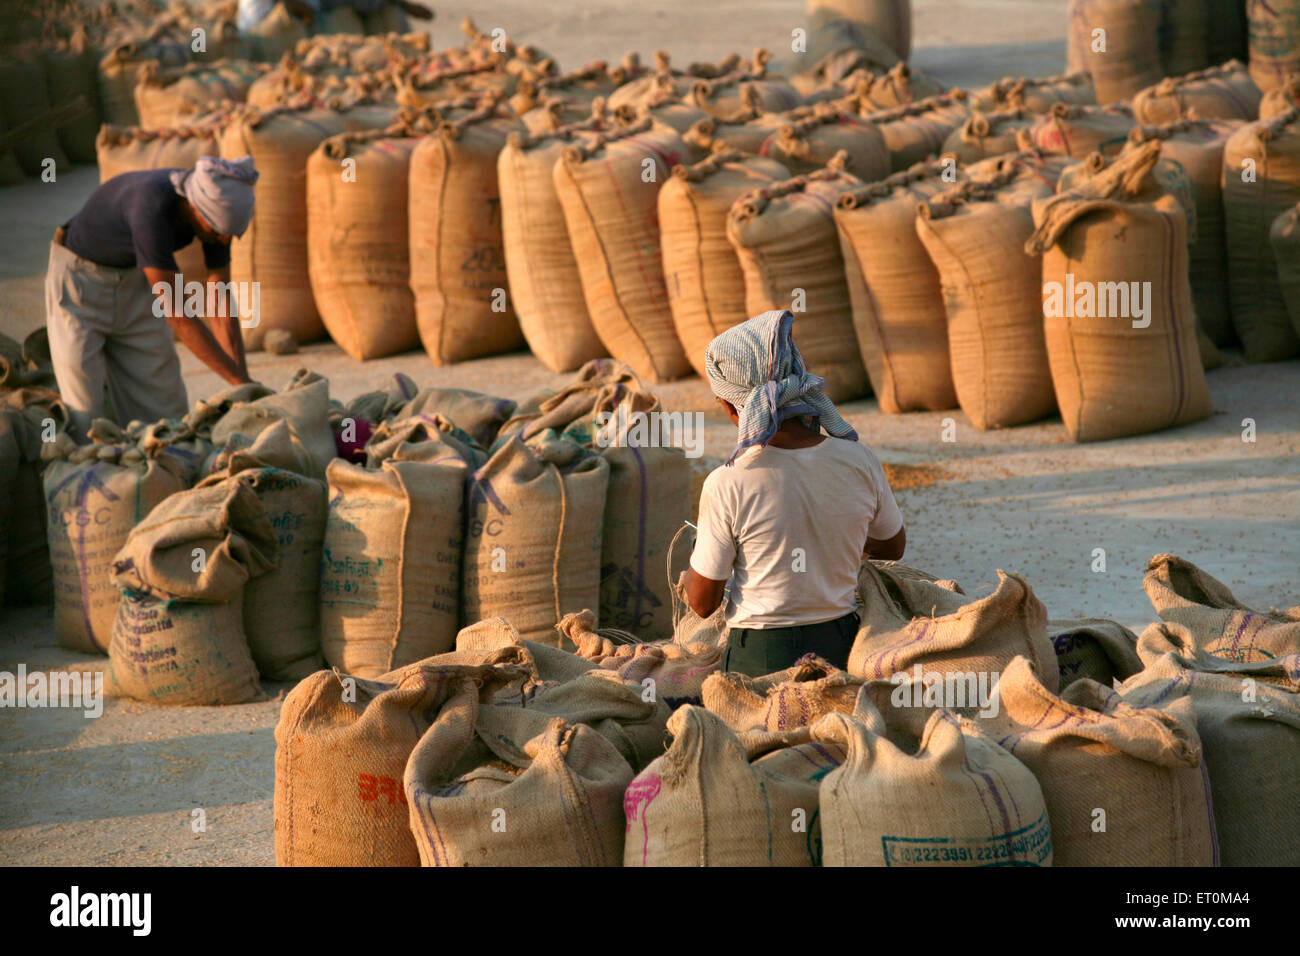 Sacs de jute couture travailleurs contenant des céréales alimentaires à Harsud Mandi ; céréales alimentaires dans le marché ; Madhya Pradesh Bhopal Inde ; Banque D'Images